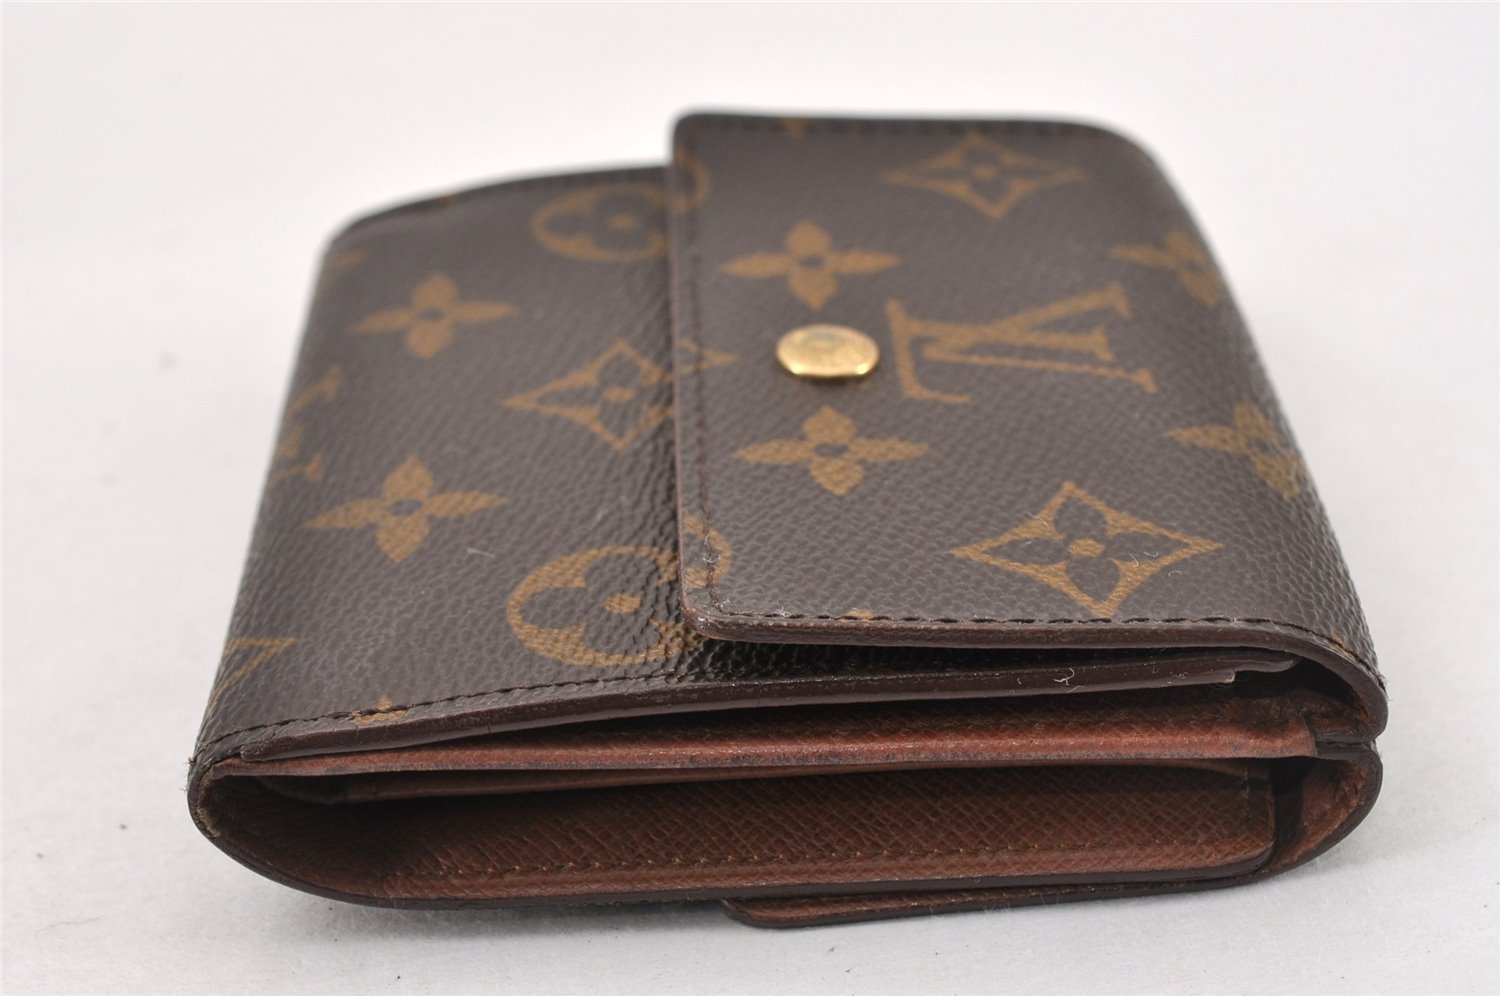 Authentic Louis Vuitton Monogram M61652 Porte Monnaie Billet Carte Credit K4673